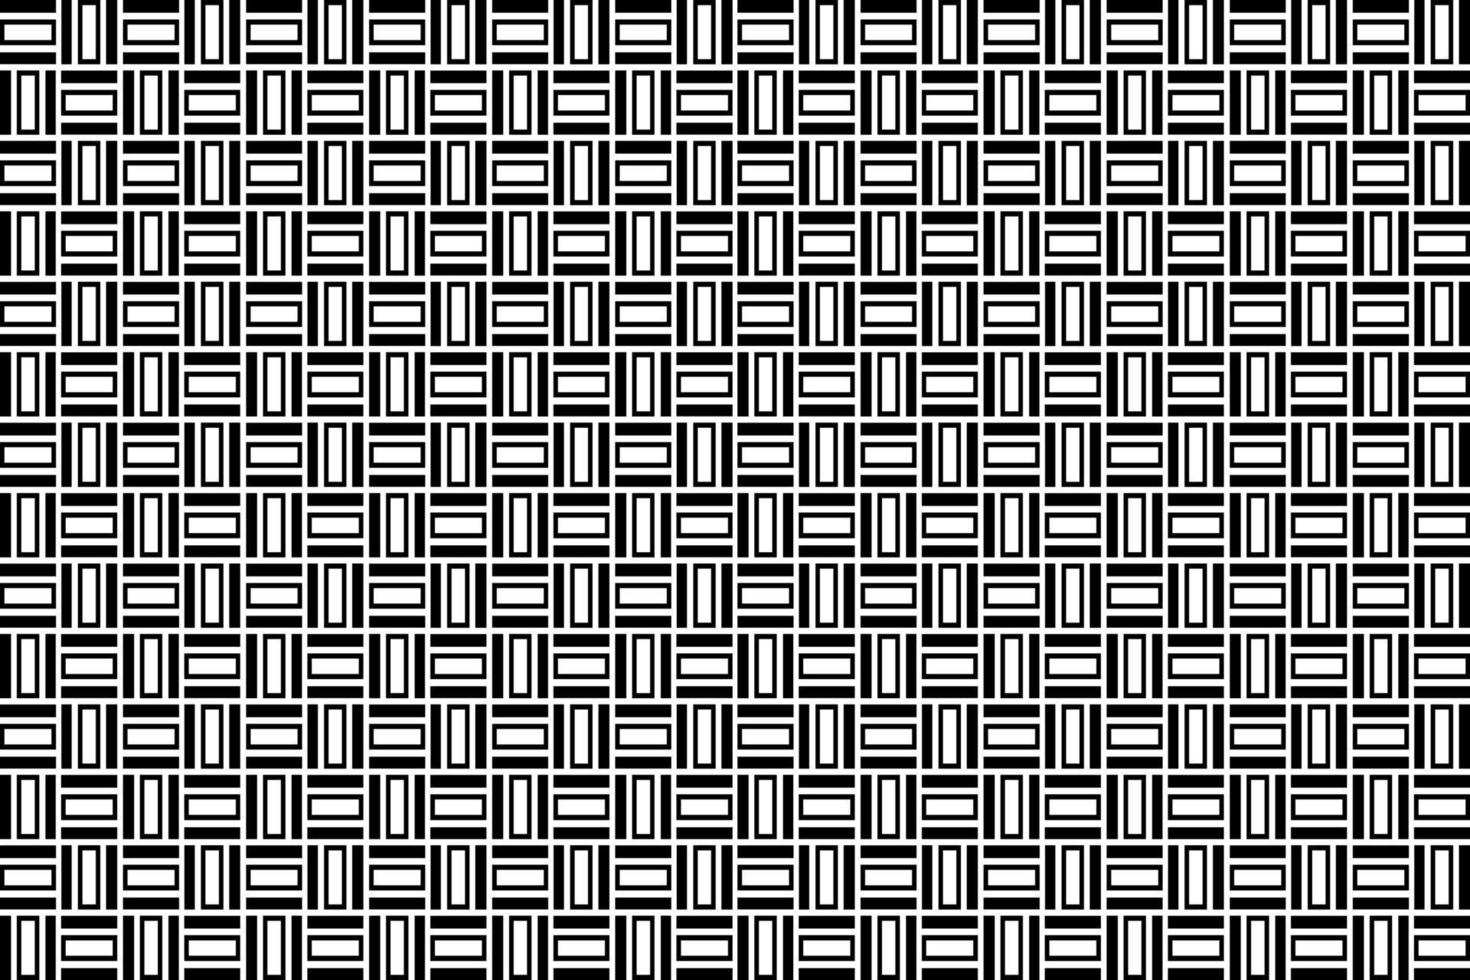 abstrakt schwarz und Weiß geometrisch Muster. einfarbig geometrisch Muster mit wiederholen Elemente. vektor